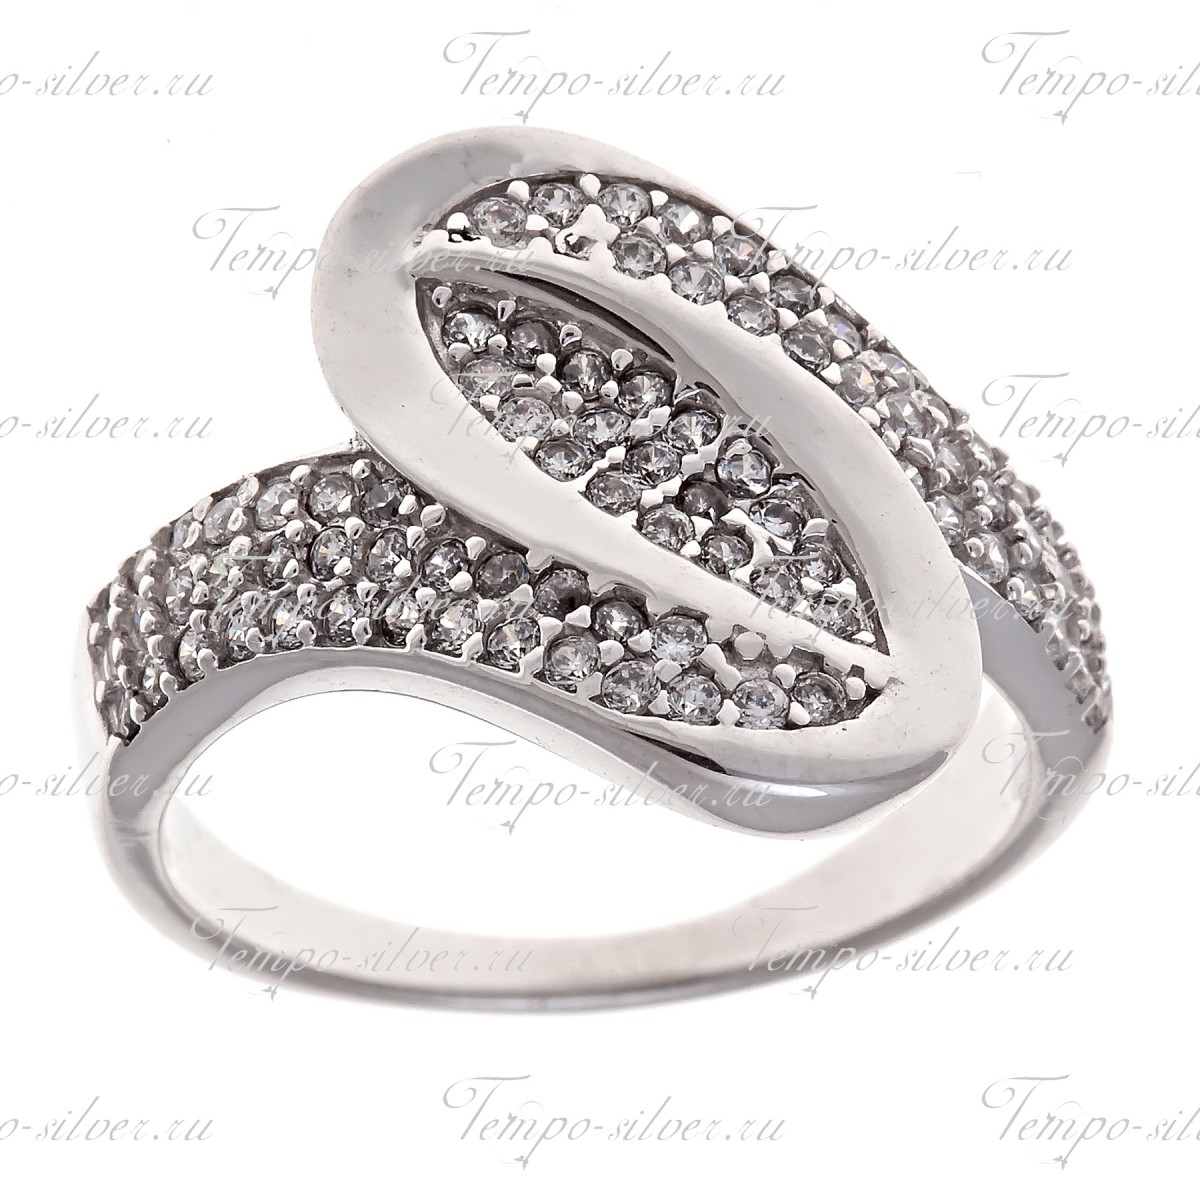 Кольцо из серебра необычной зигзагообразной формы, украшенное белыми циркониями цена